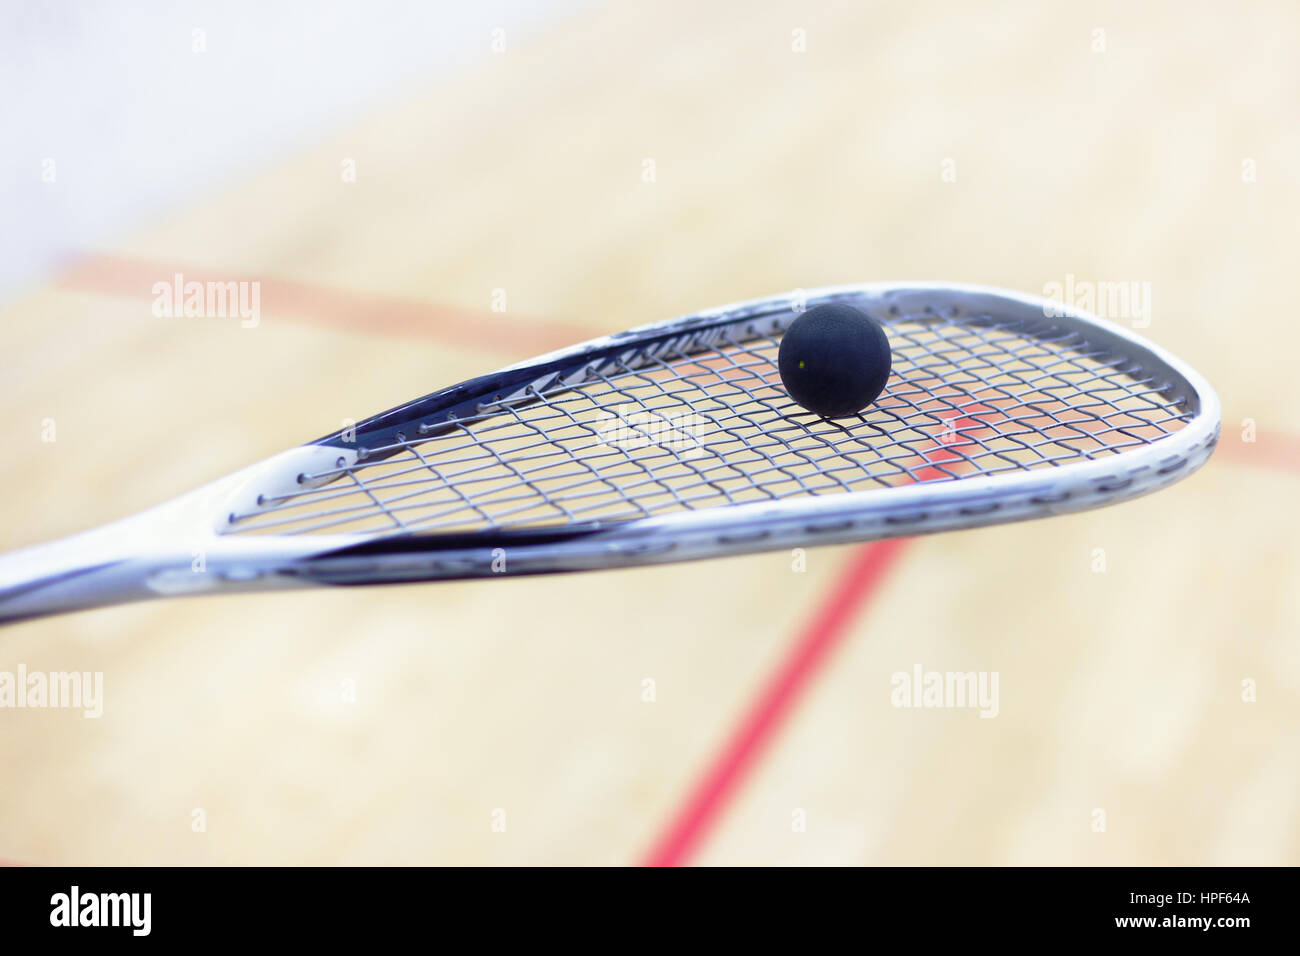 Squash-Schläger und Ball. Squash-Ausrüstung. Squash-Ball auf Squash-Schläger mit Gericht auf dem Hintergrund. Foto mit Muskelaufbau und selektiven Fokus Stockfoto